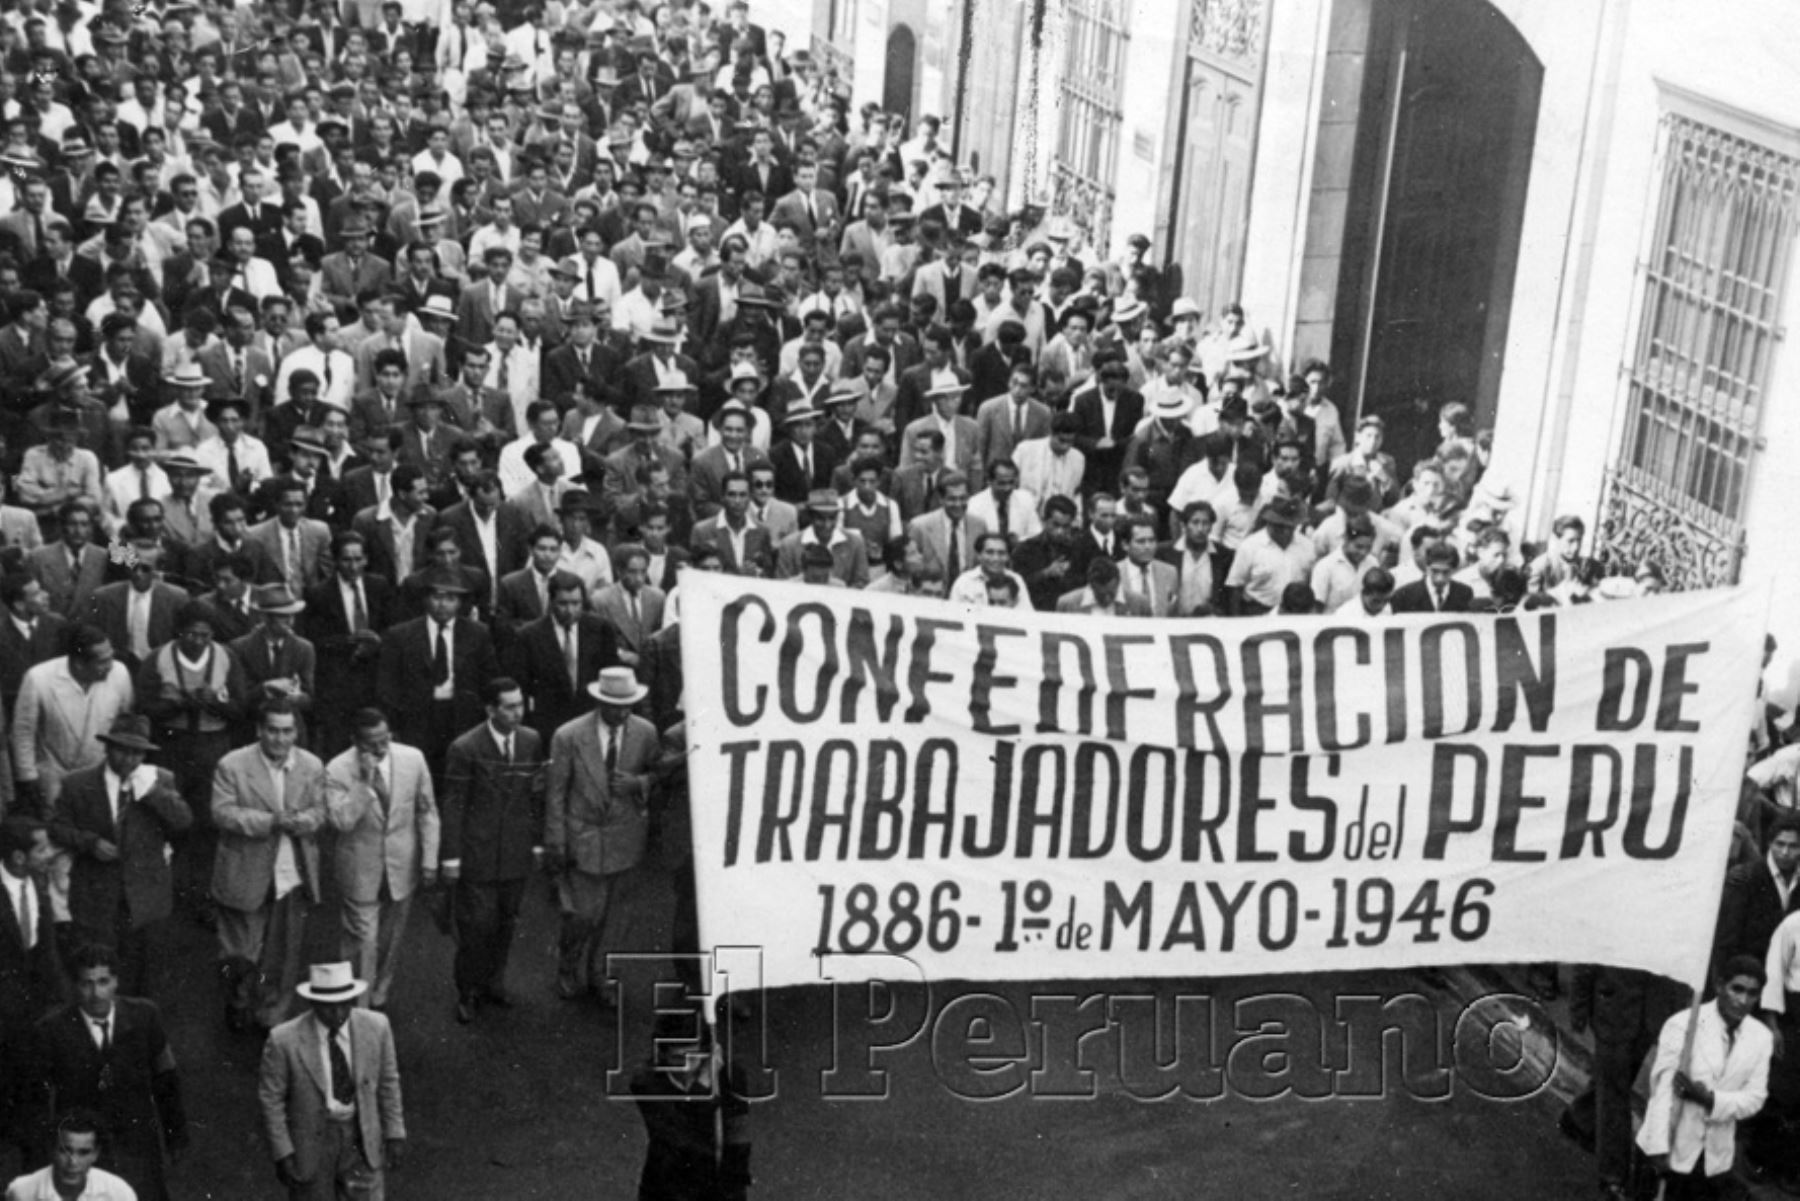 Lima, año 1946 / Marcha pacifica de la Confederación de Trabajadores del Perú, banderola de la Confederación de Trabajadores del Perú 1886 - 1° de Mayo - 1946. DIa del trabajo.
Foto: ANDINA/archivo